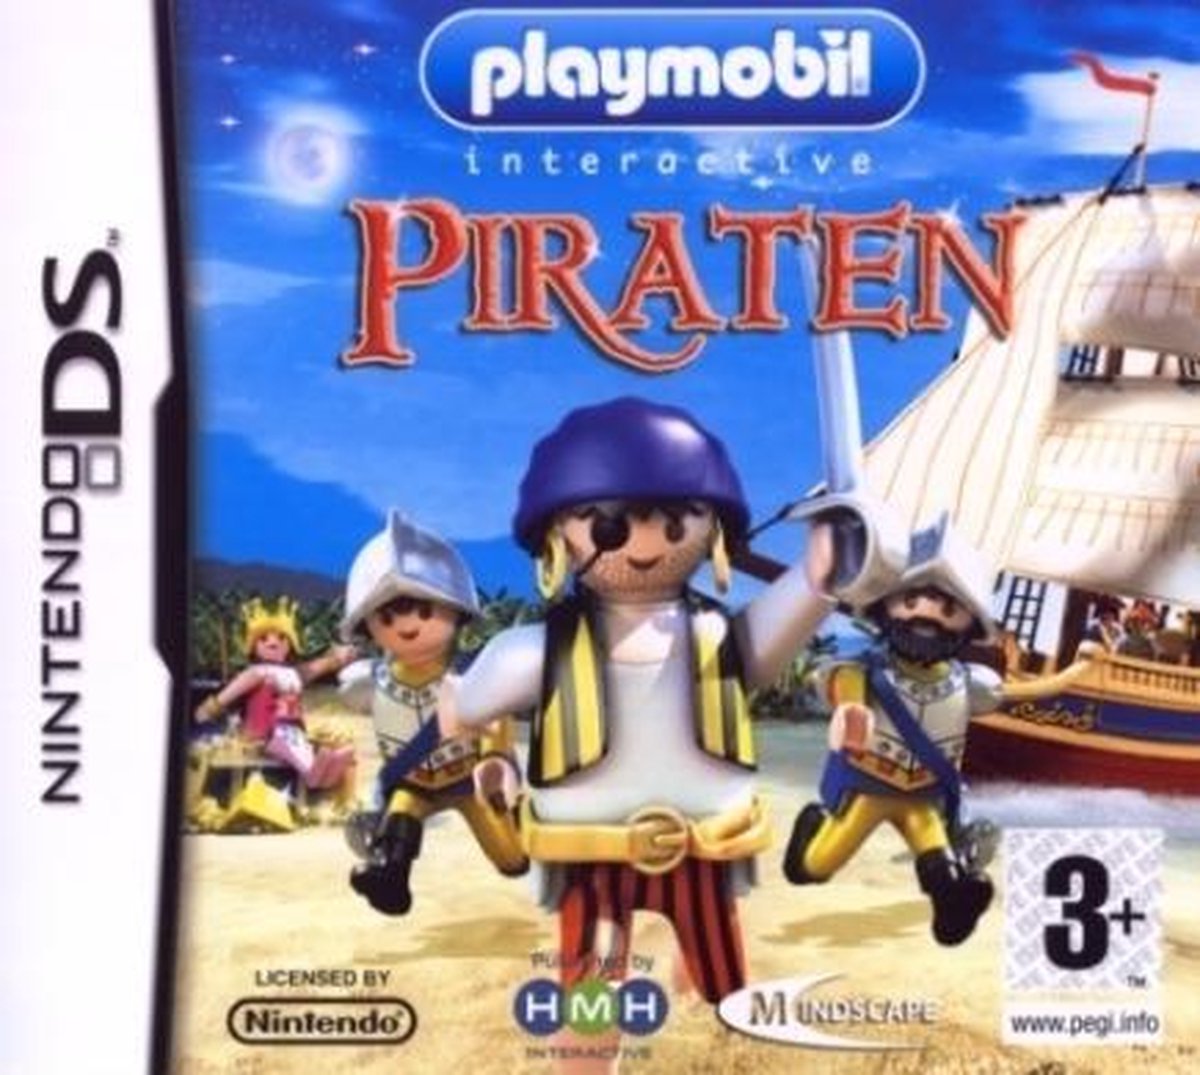 Gewend surfen ik ontbijt Playmobil, Piraten Nds | Games | bol.com